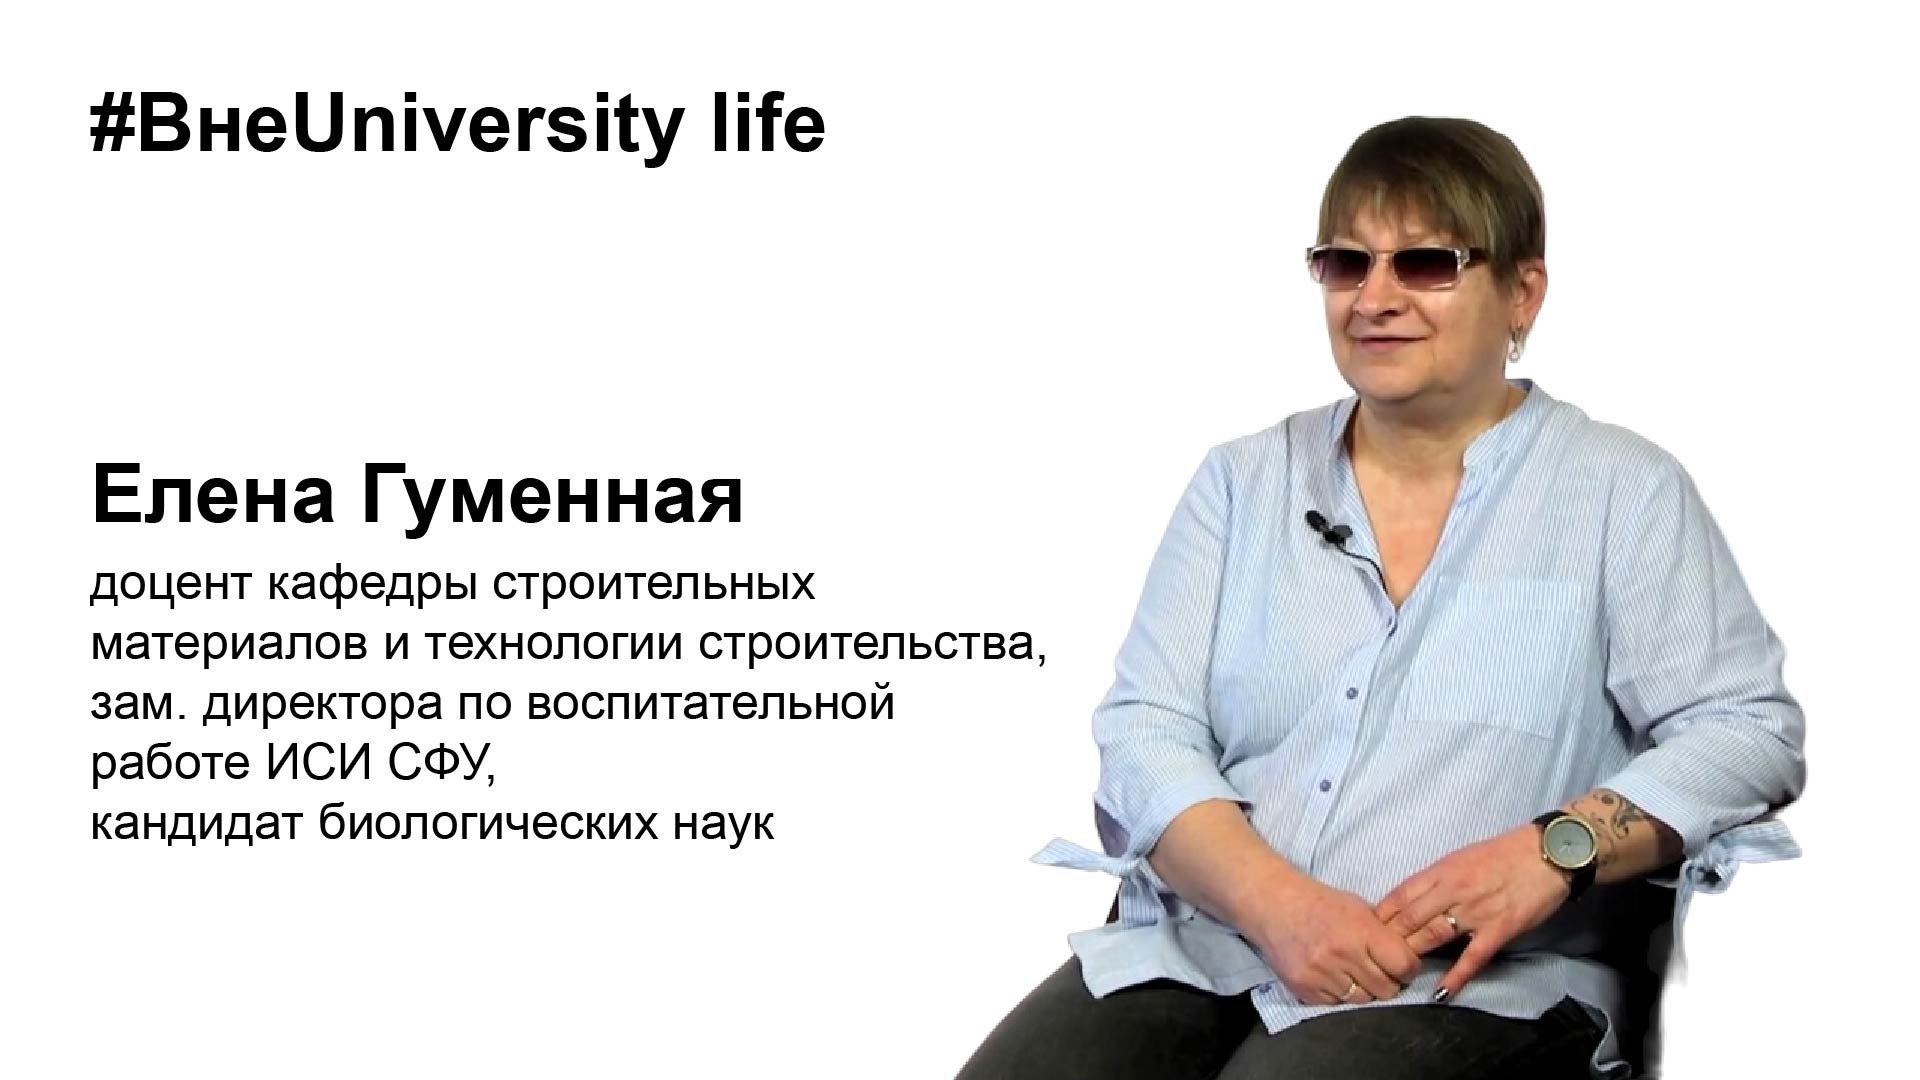 ВнеUniversity life: Елена Гуменная (ИСИ СФУ)